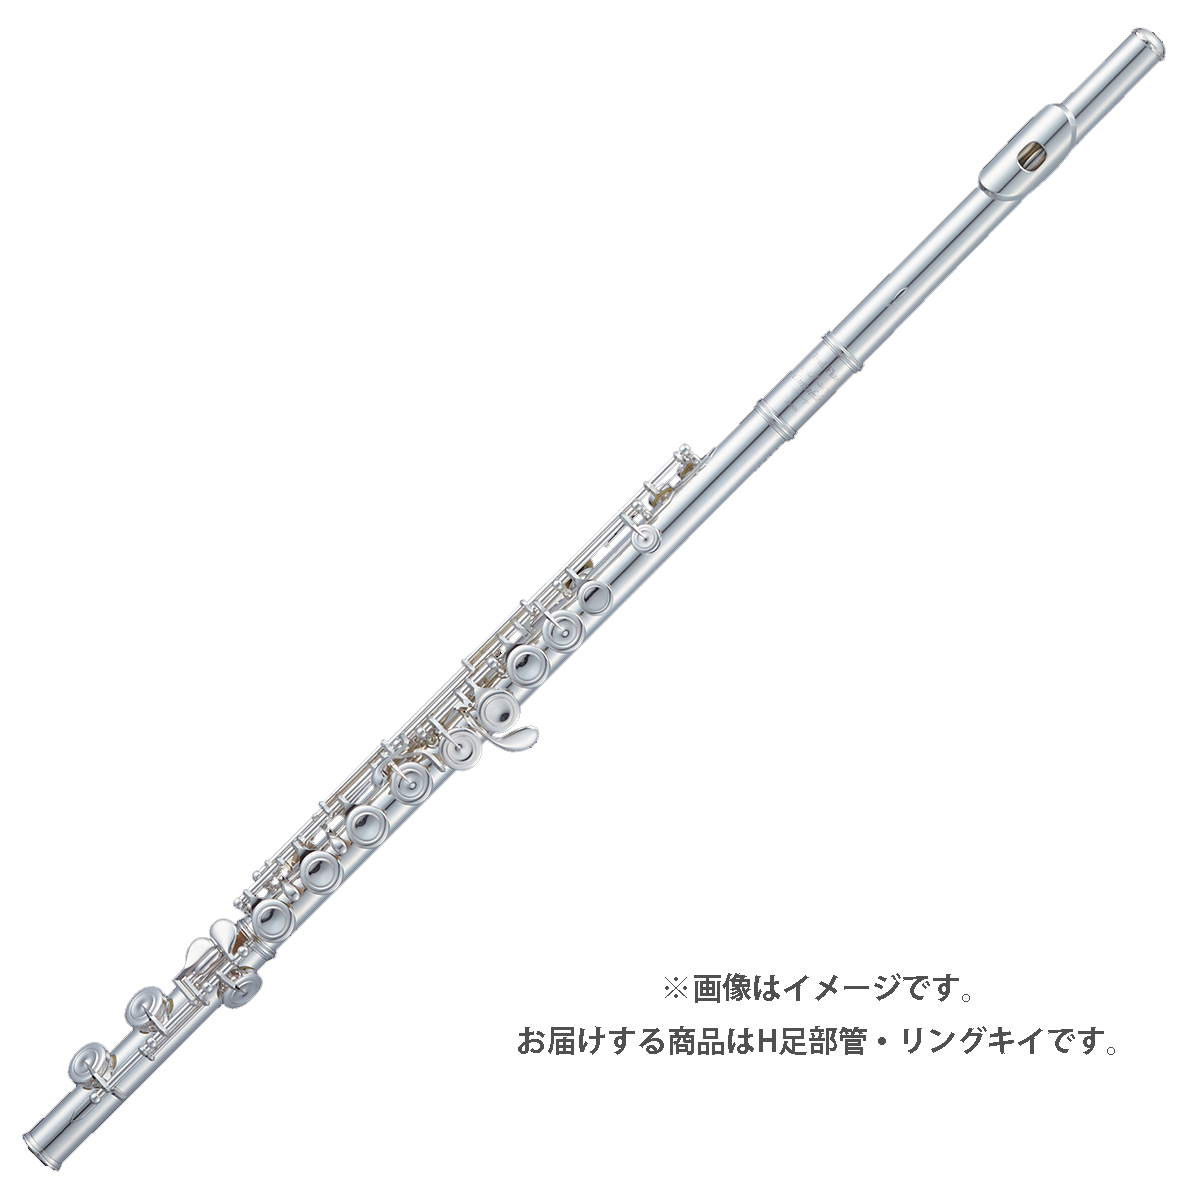 パール　フルート（Pearl Flute)  総銀　カンタービレ